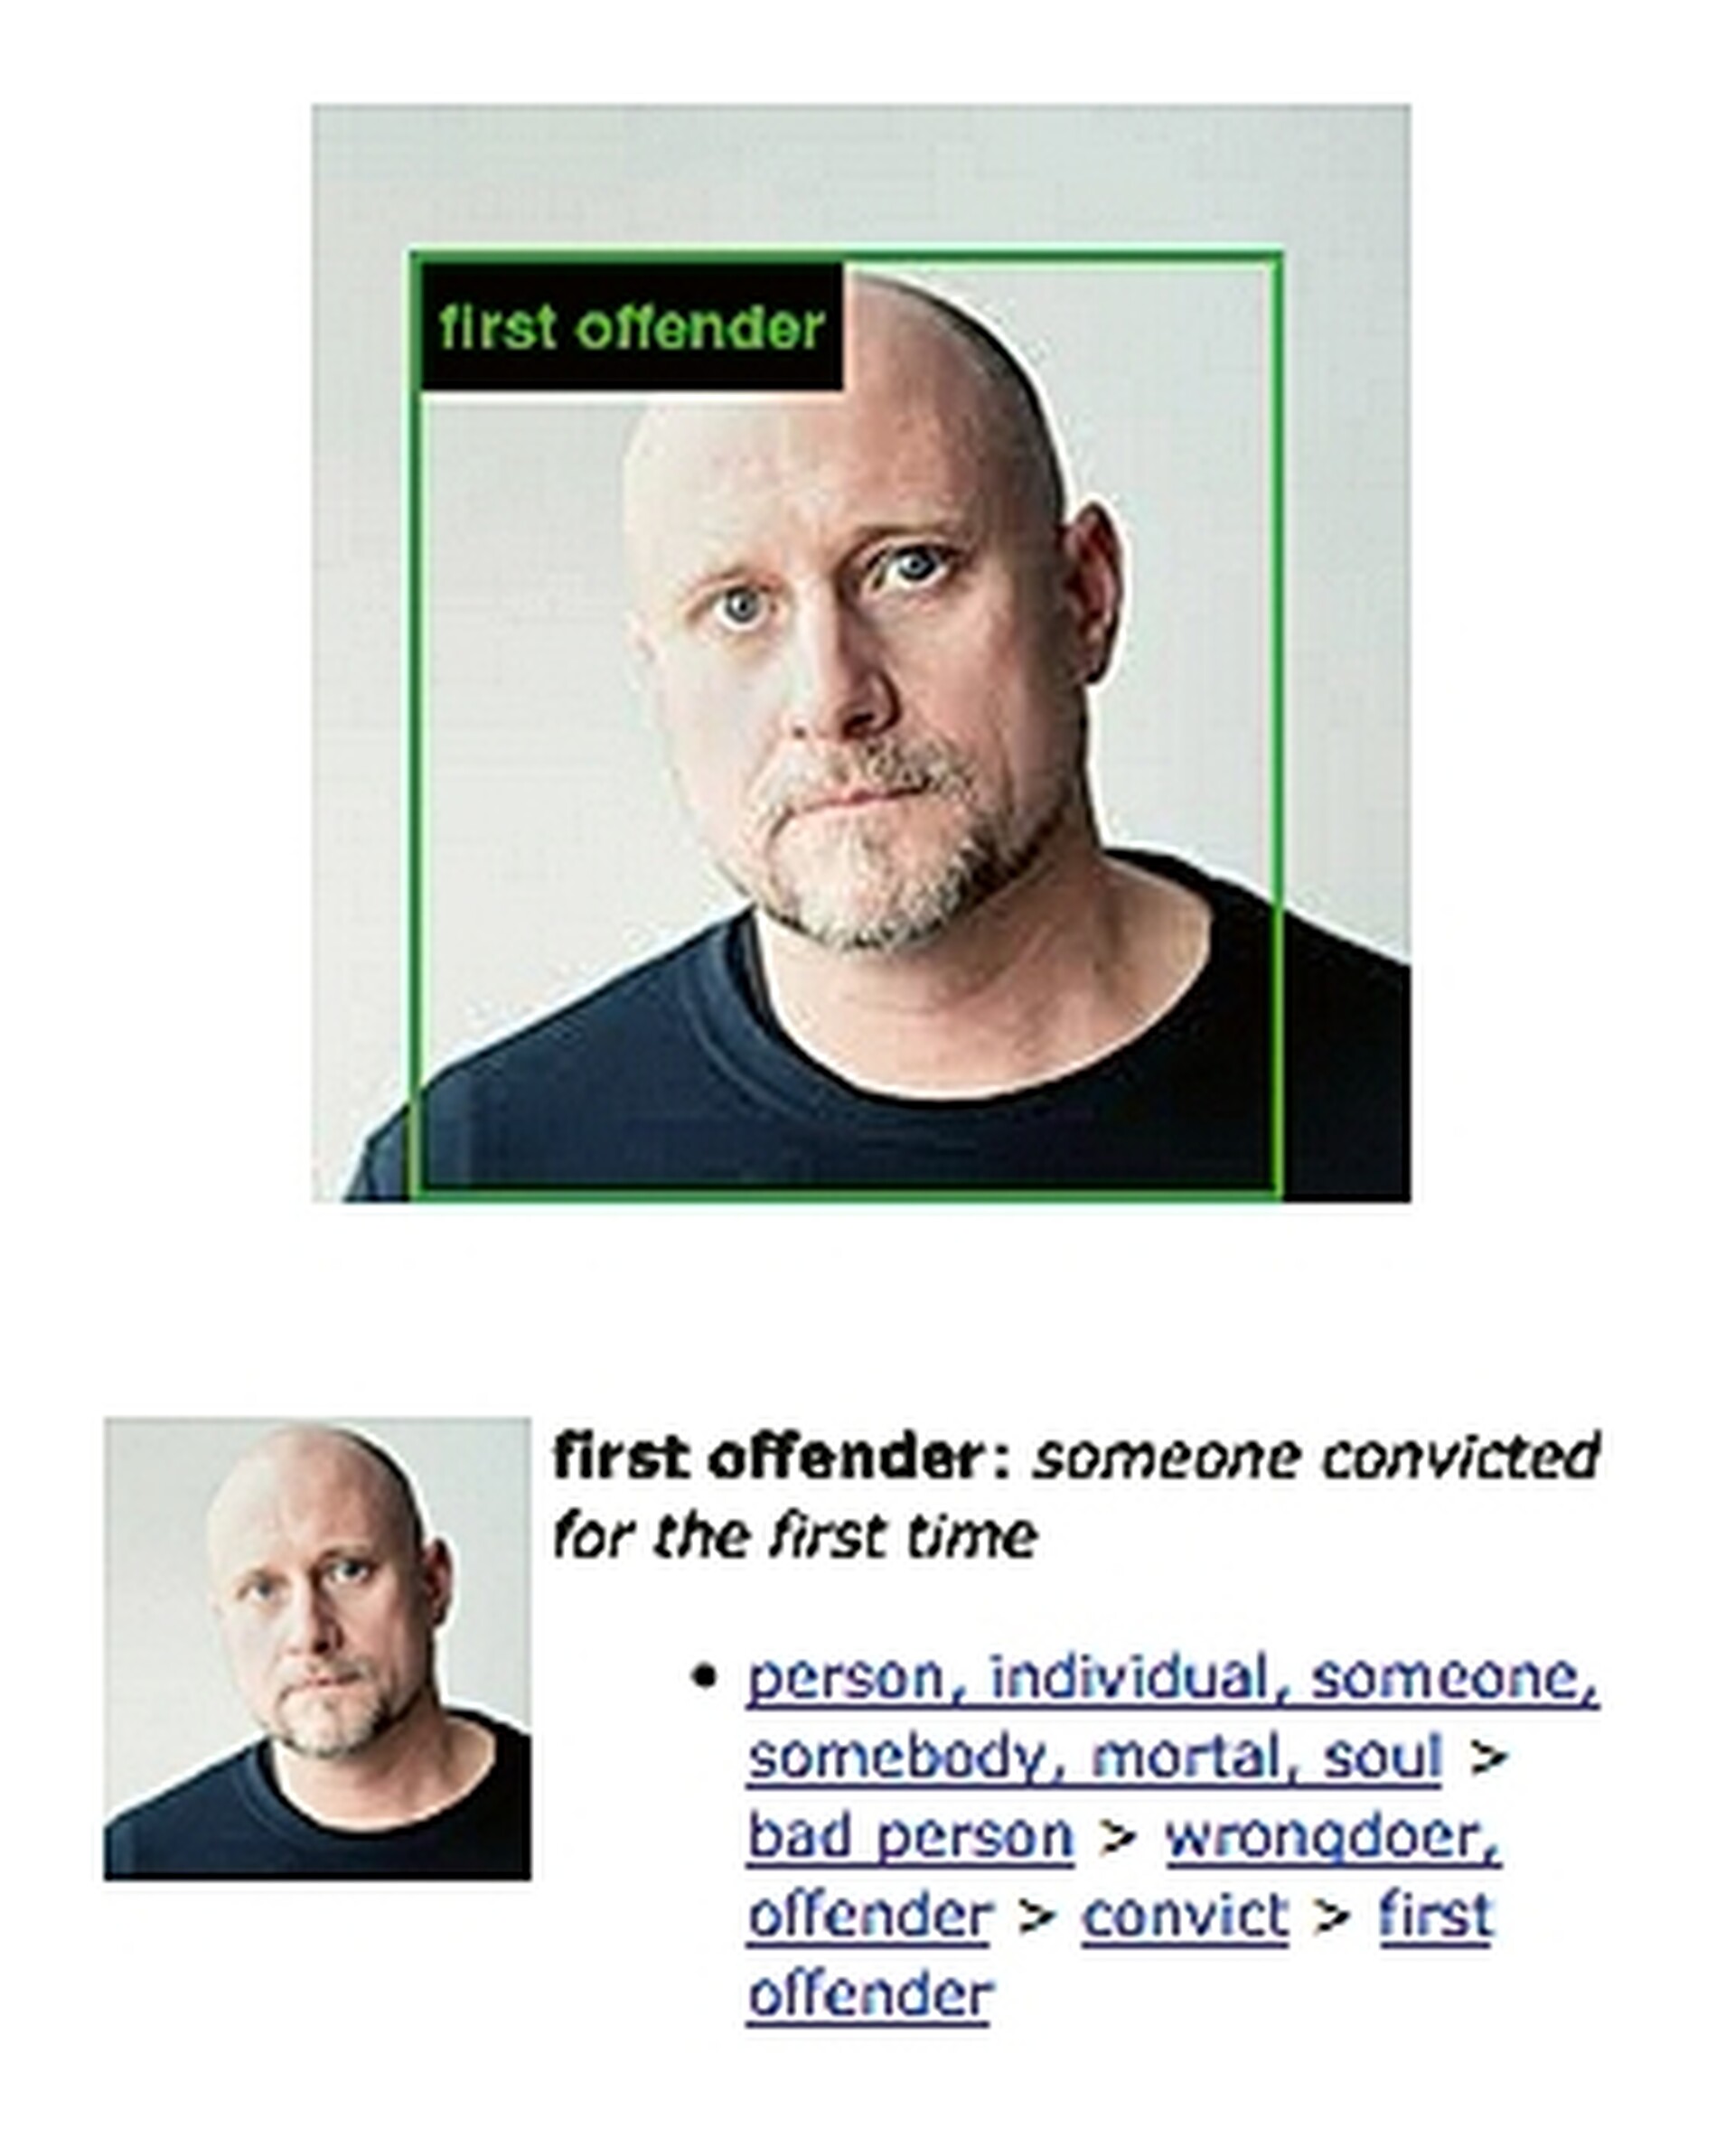  Widok ekranu z aplikacji ImageNet Roullete. Na ekranie widać łysego mężczyznę w wieku trzydziestuparu lat. Mężczyzna został opisany przez aplikację jako „first offender”, czyli przestępca skazany po raz pierwszy. 